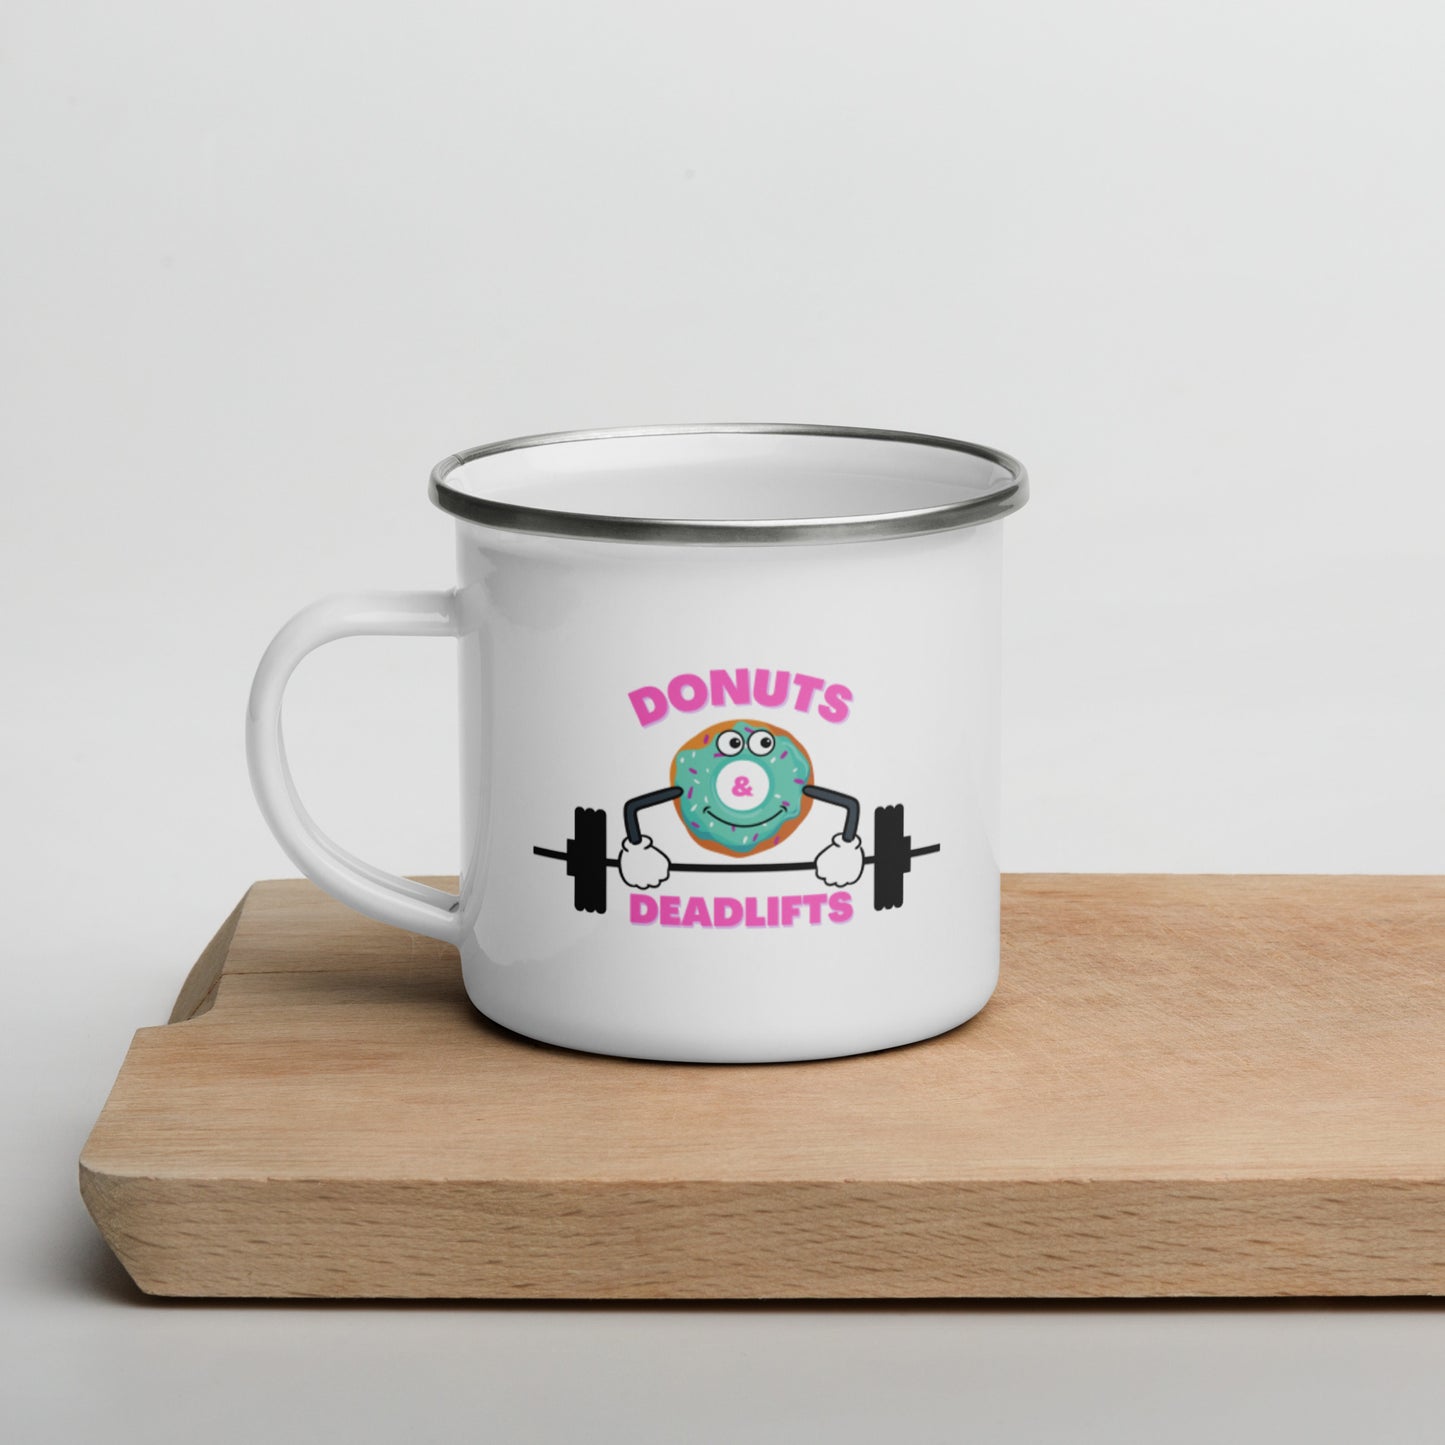 Donuts and Deadlifts - Enamel Mug